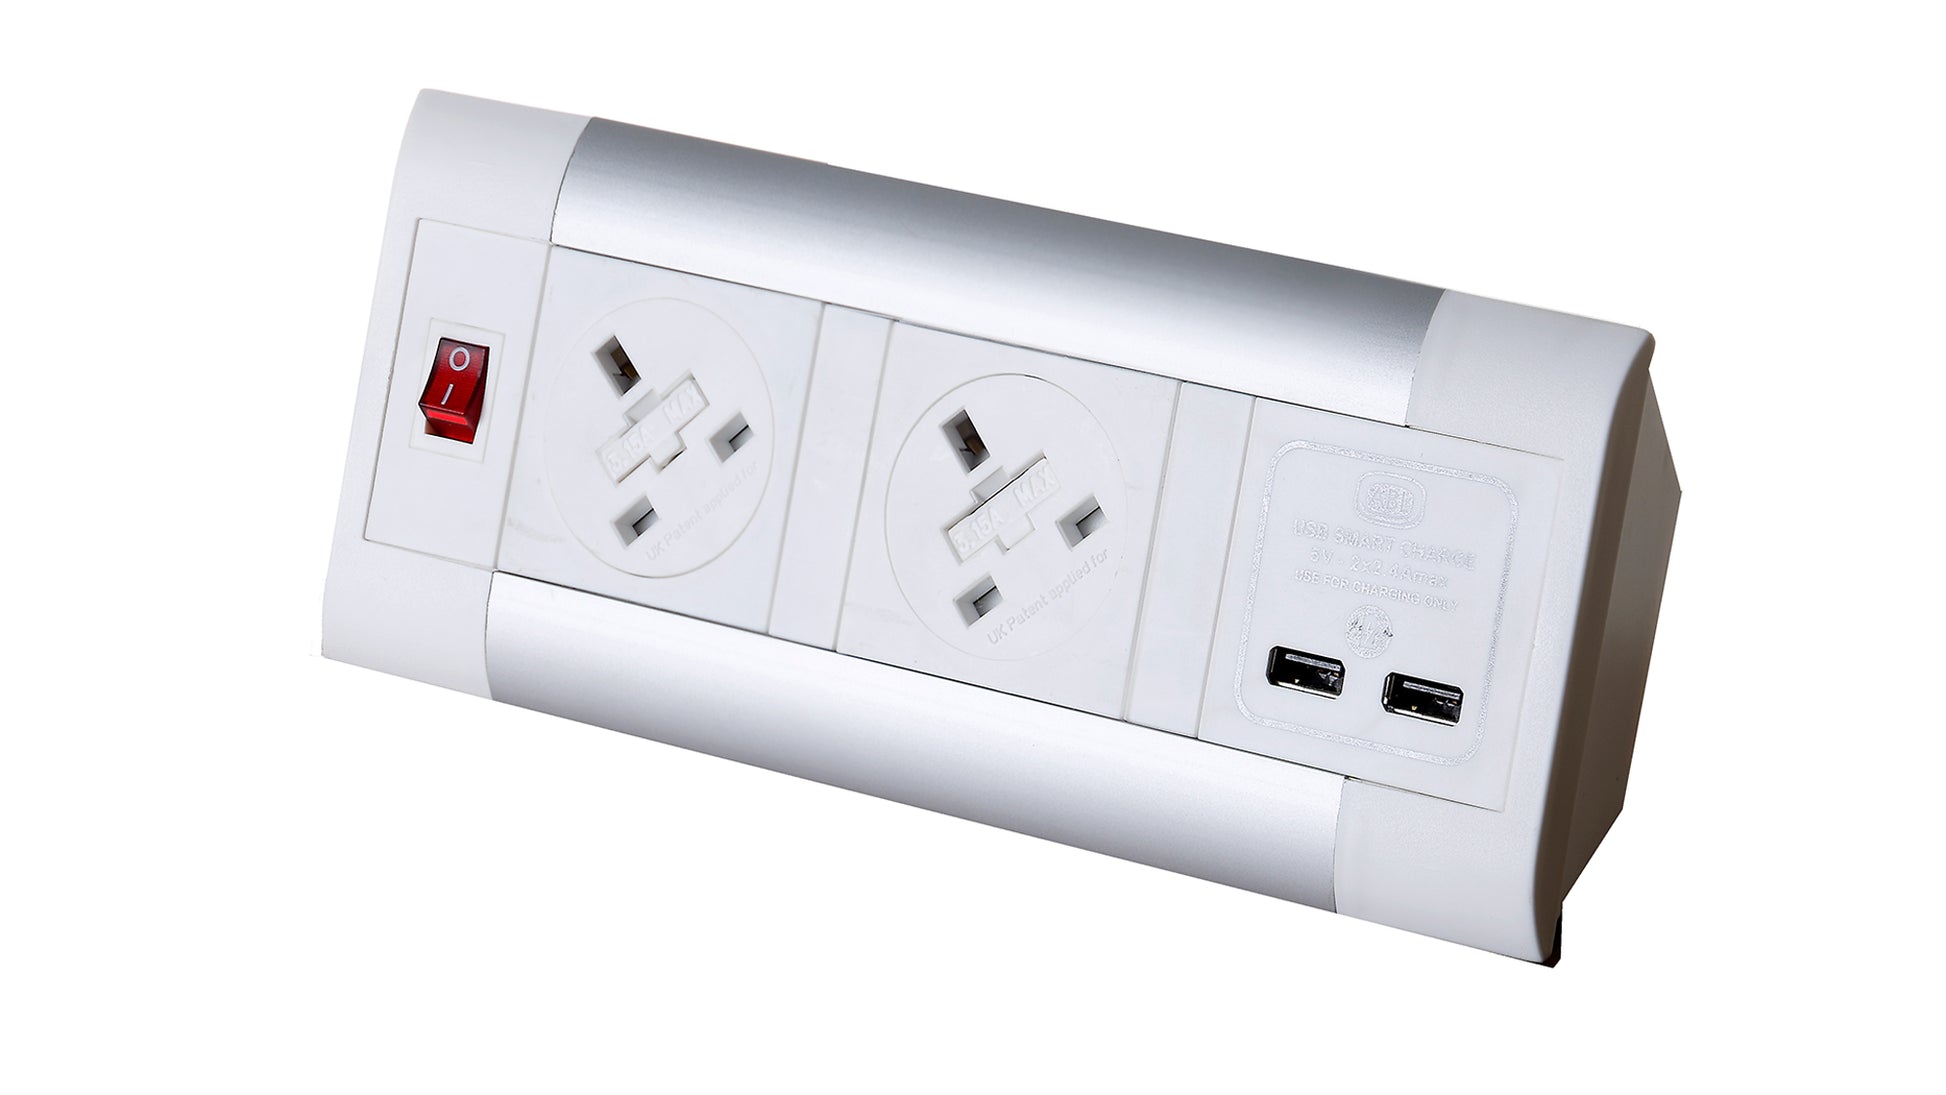 Impulse Desktop Module 2 x 5A UK Sockets, 1 x Neon Switch, 1 x 500mm Lead to 3 Pole Connector in White